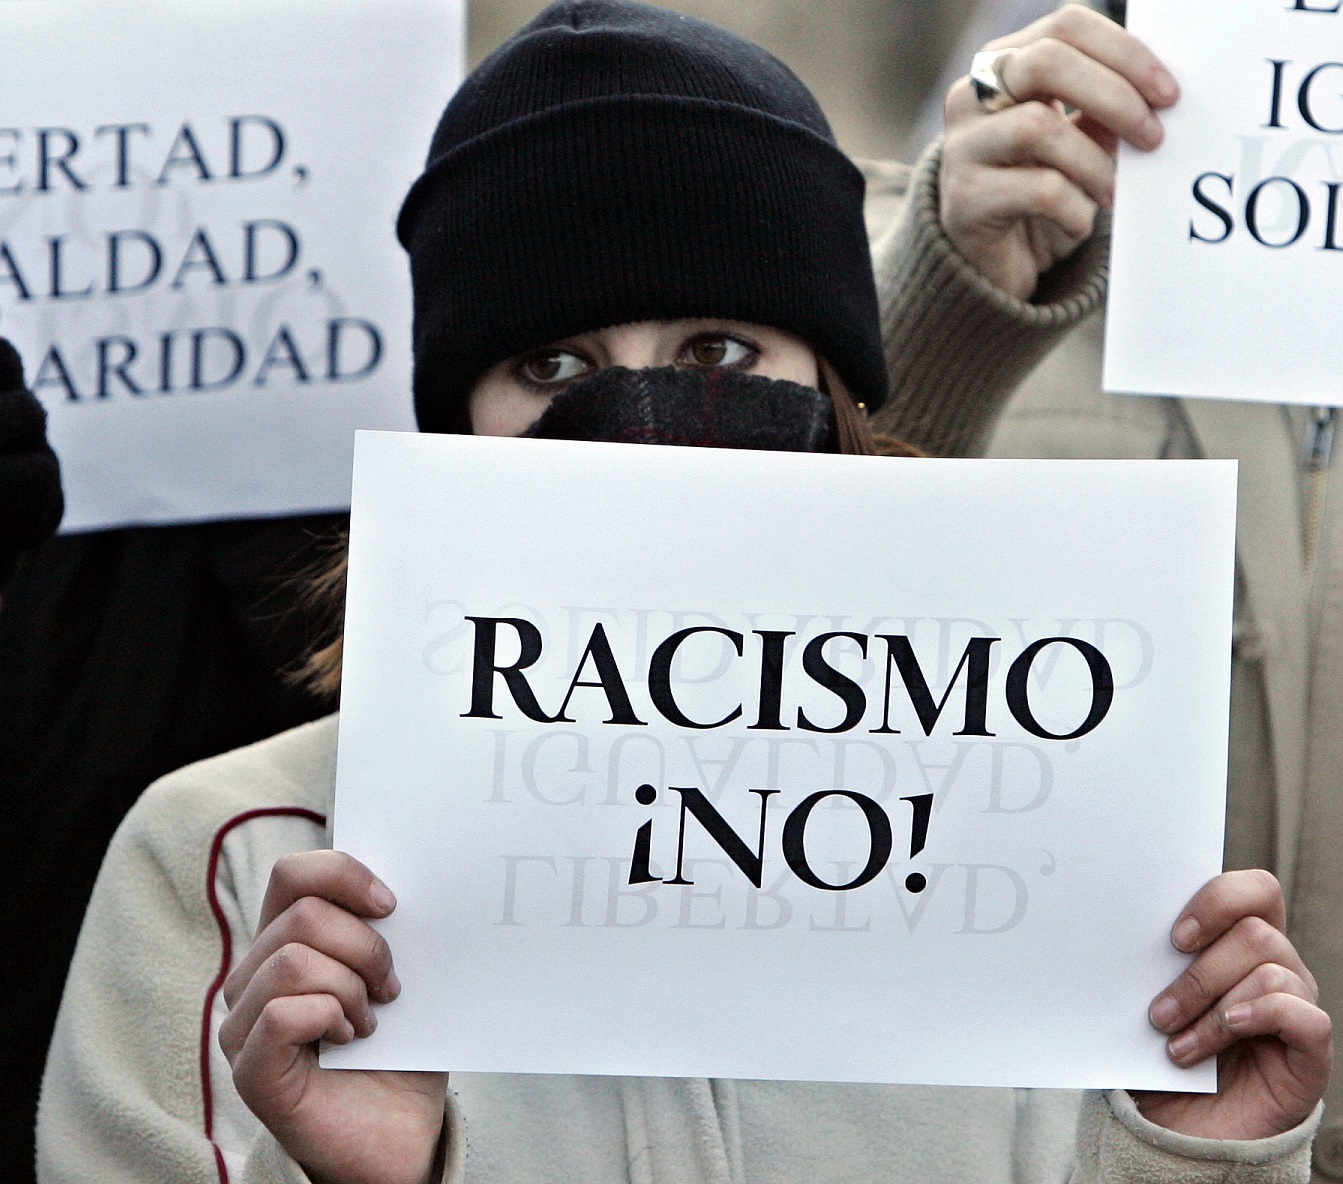 Una mujer posta una pancarta en la que se puede leer "Racismo ¡NO!" en una manifestación celebrada en Alcorcón en favor de los derechos humanos en España